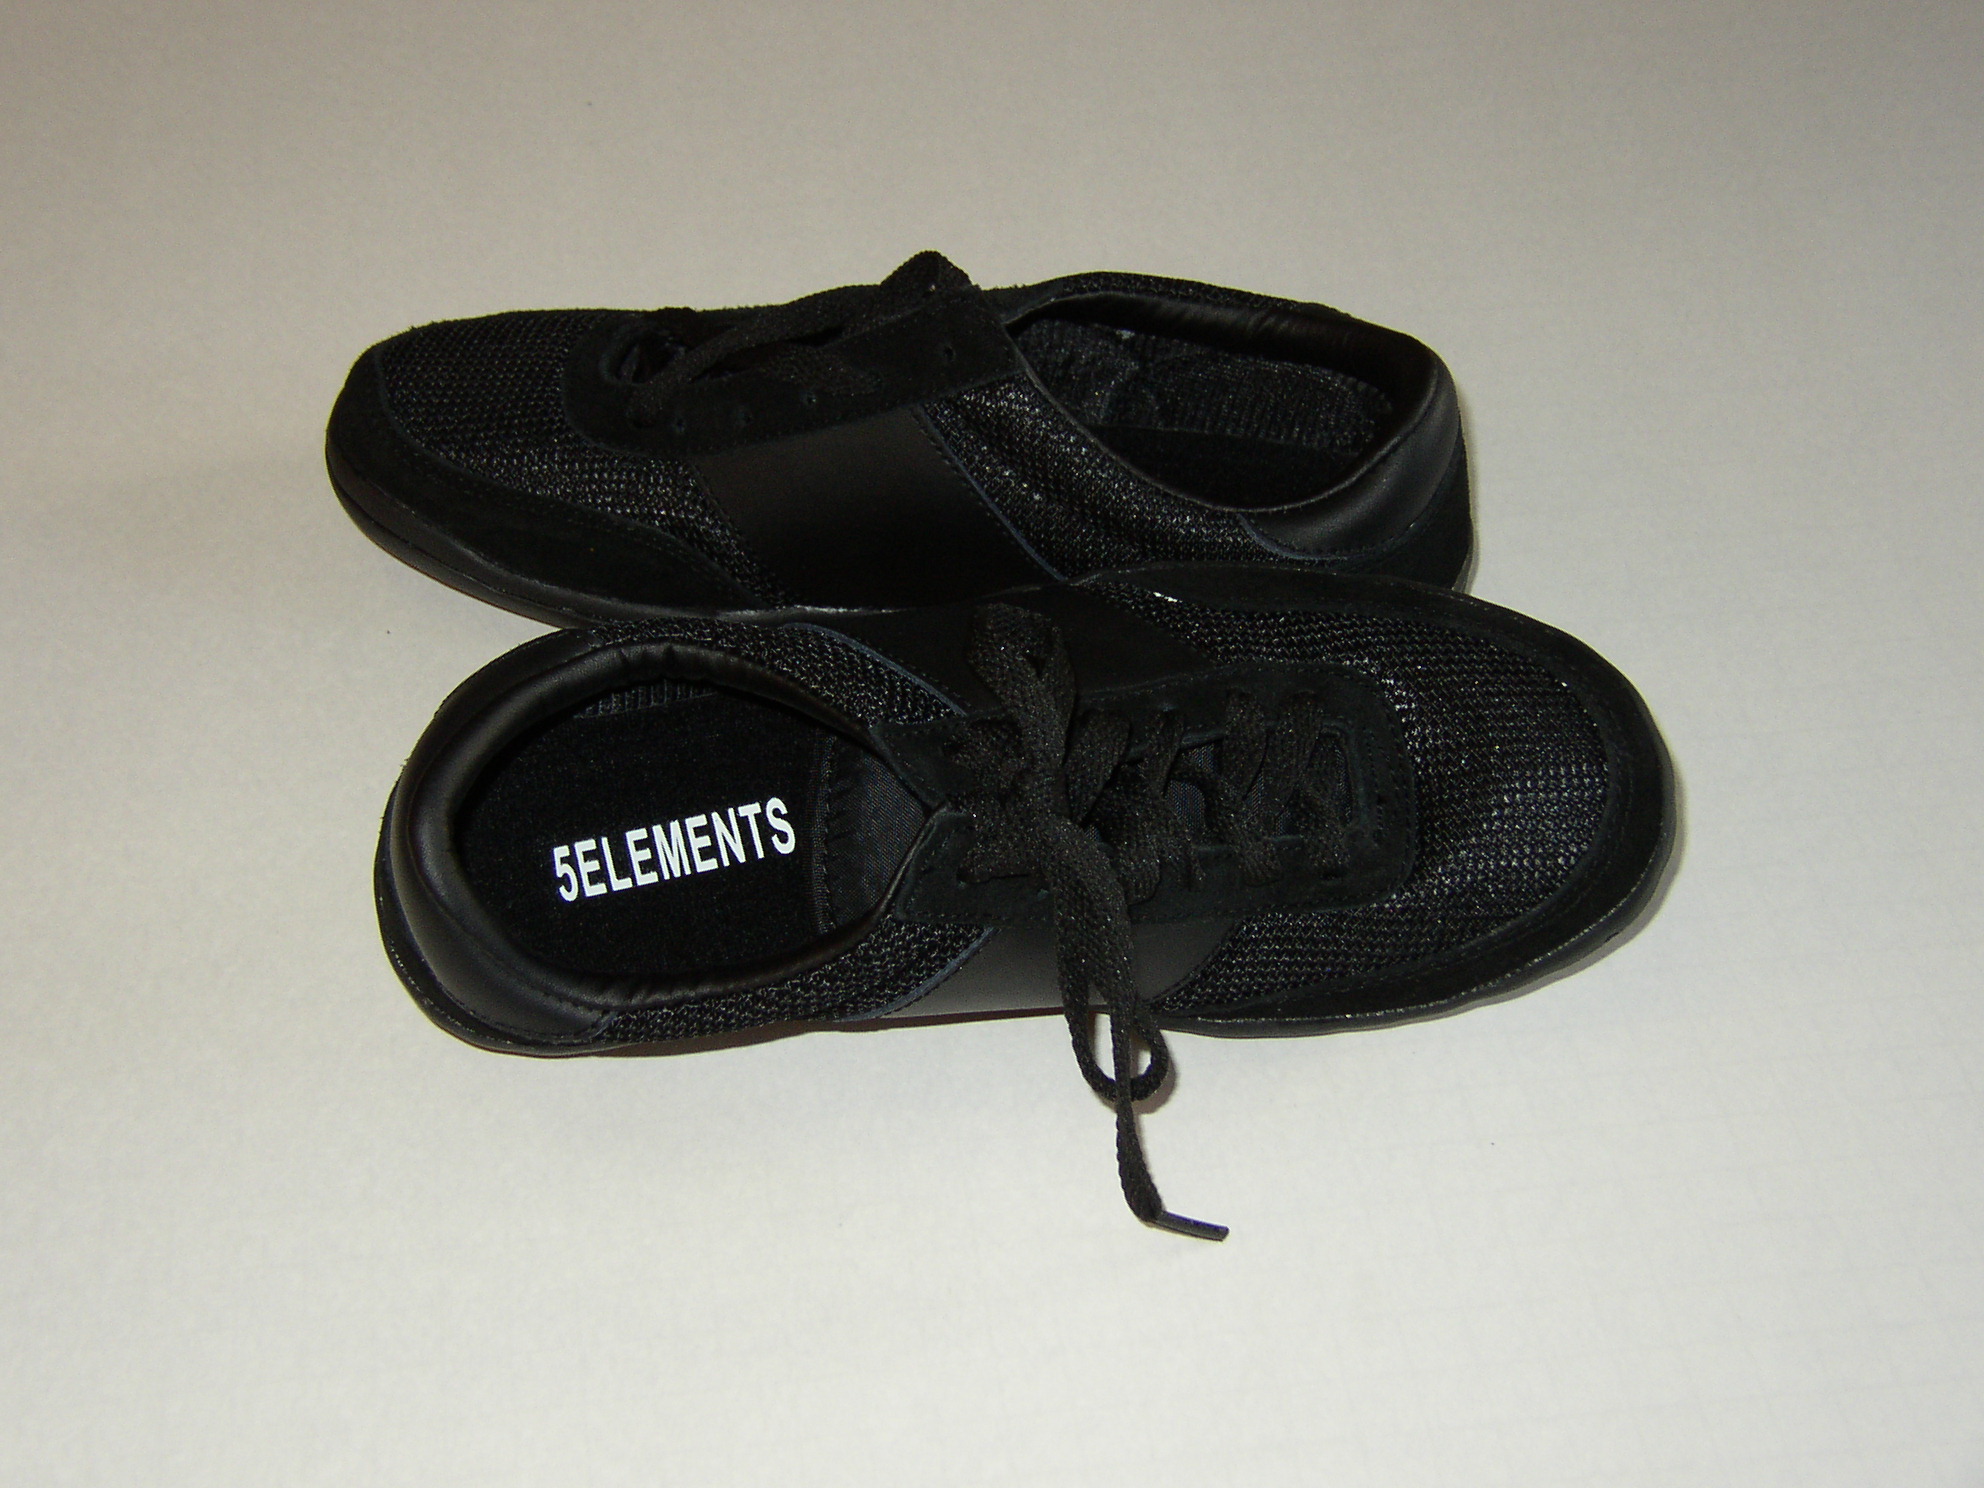 5 element shoes